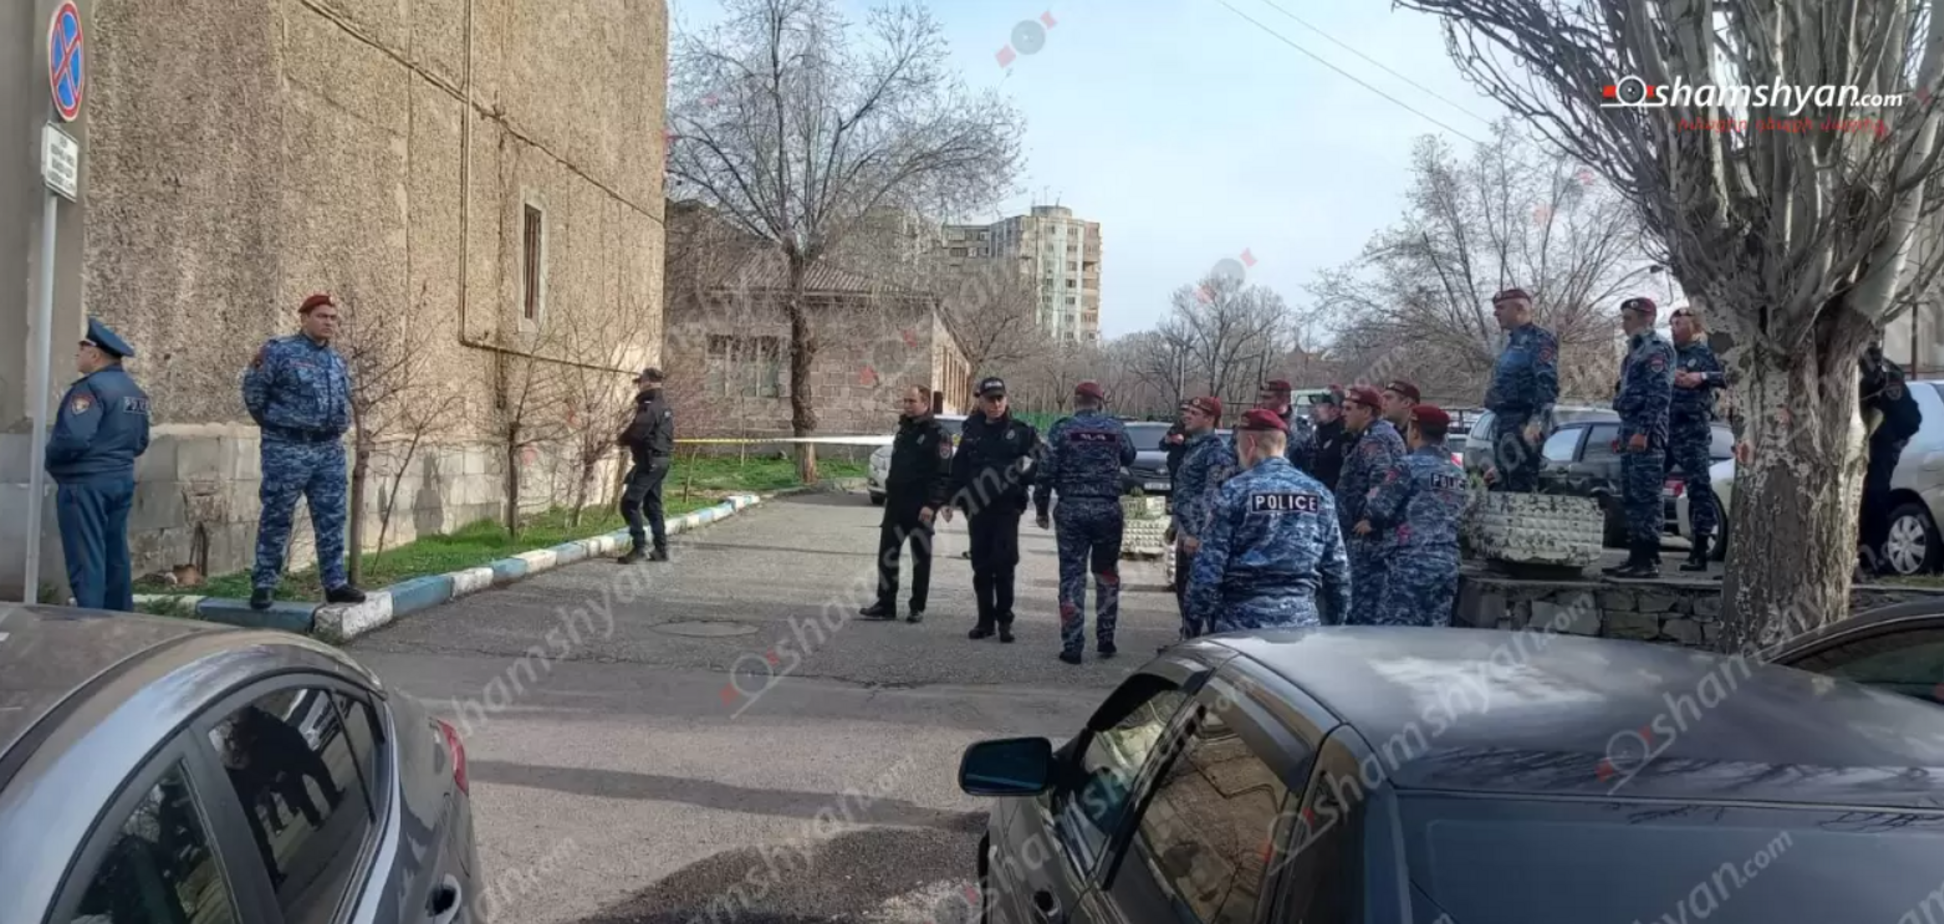 У Єревані люди зі зброєю ввірвалися у відділення поліції: 
відкрито справу про тероризм. Фото і відео